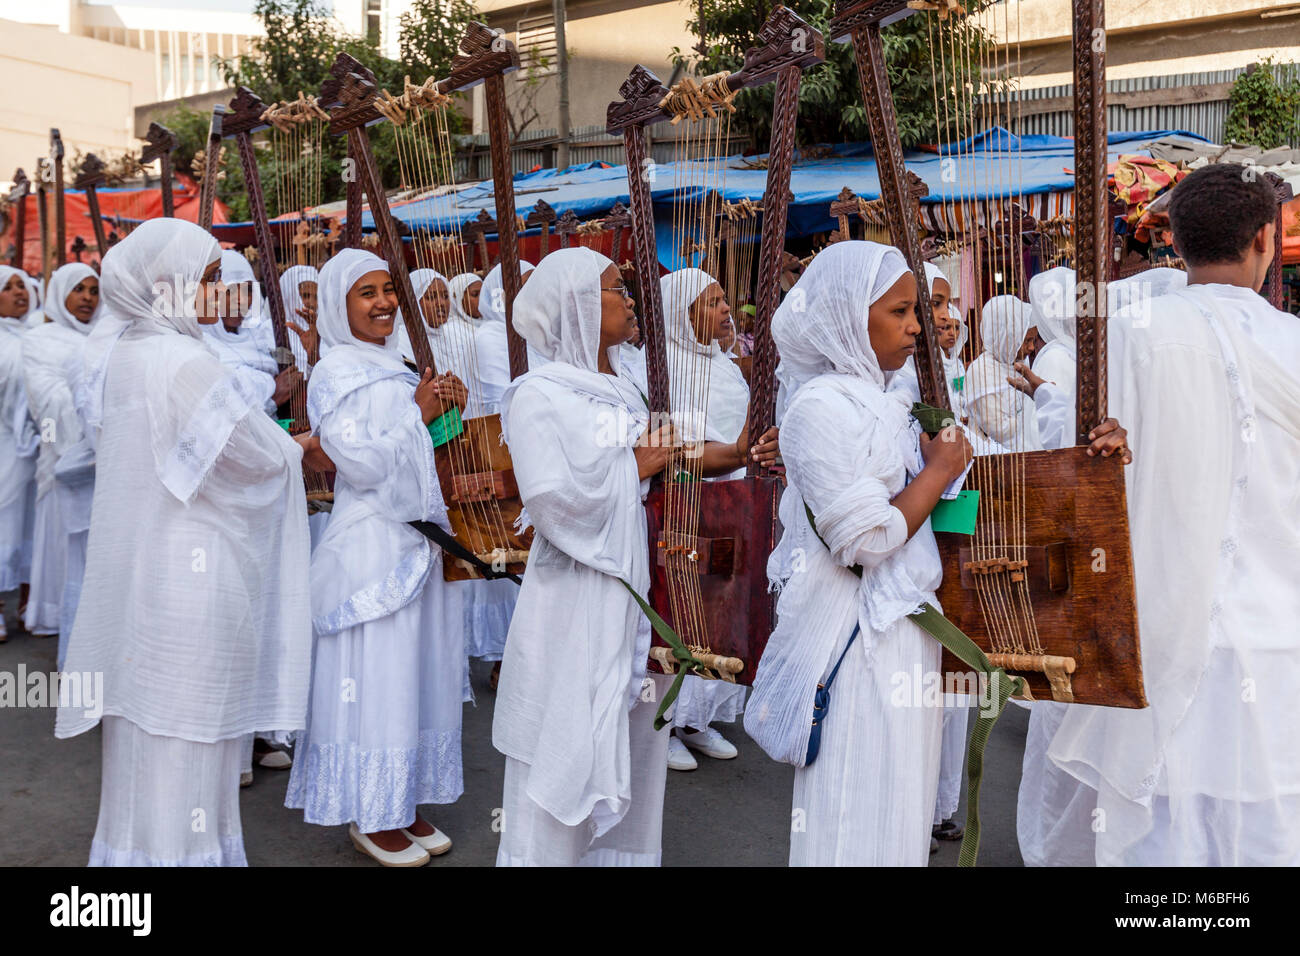 Une rue Procession de chrétiens orthodoxes Éthiopiens au cours de l'Assemblée Timkat (Epiphanie) Célébrations, Addis Abeba, Ethiopie Banque D'Images